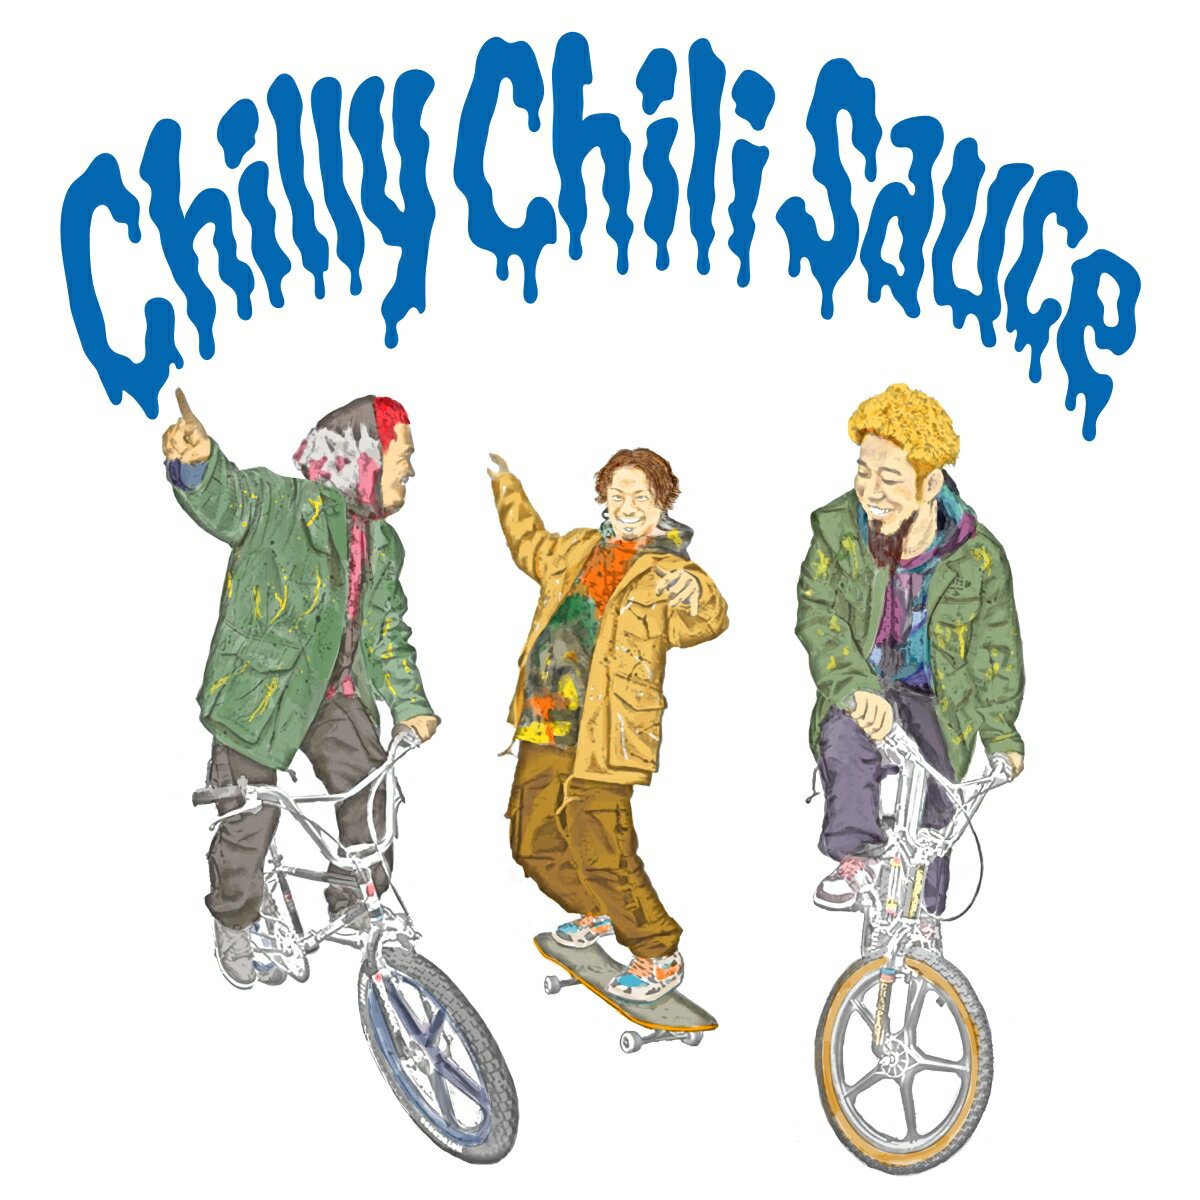 Chilly Chili Sauce (初回限定盤 CD＋DVD) WANIMA